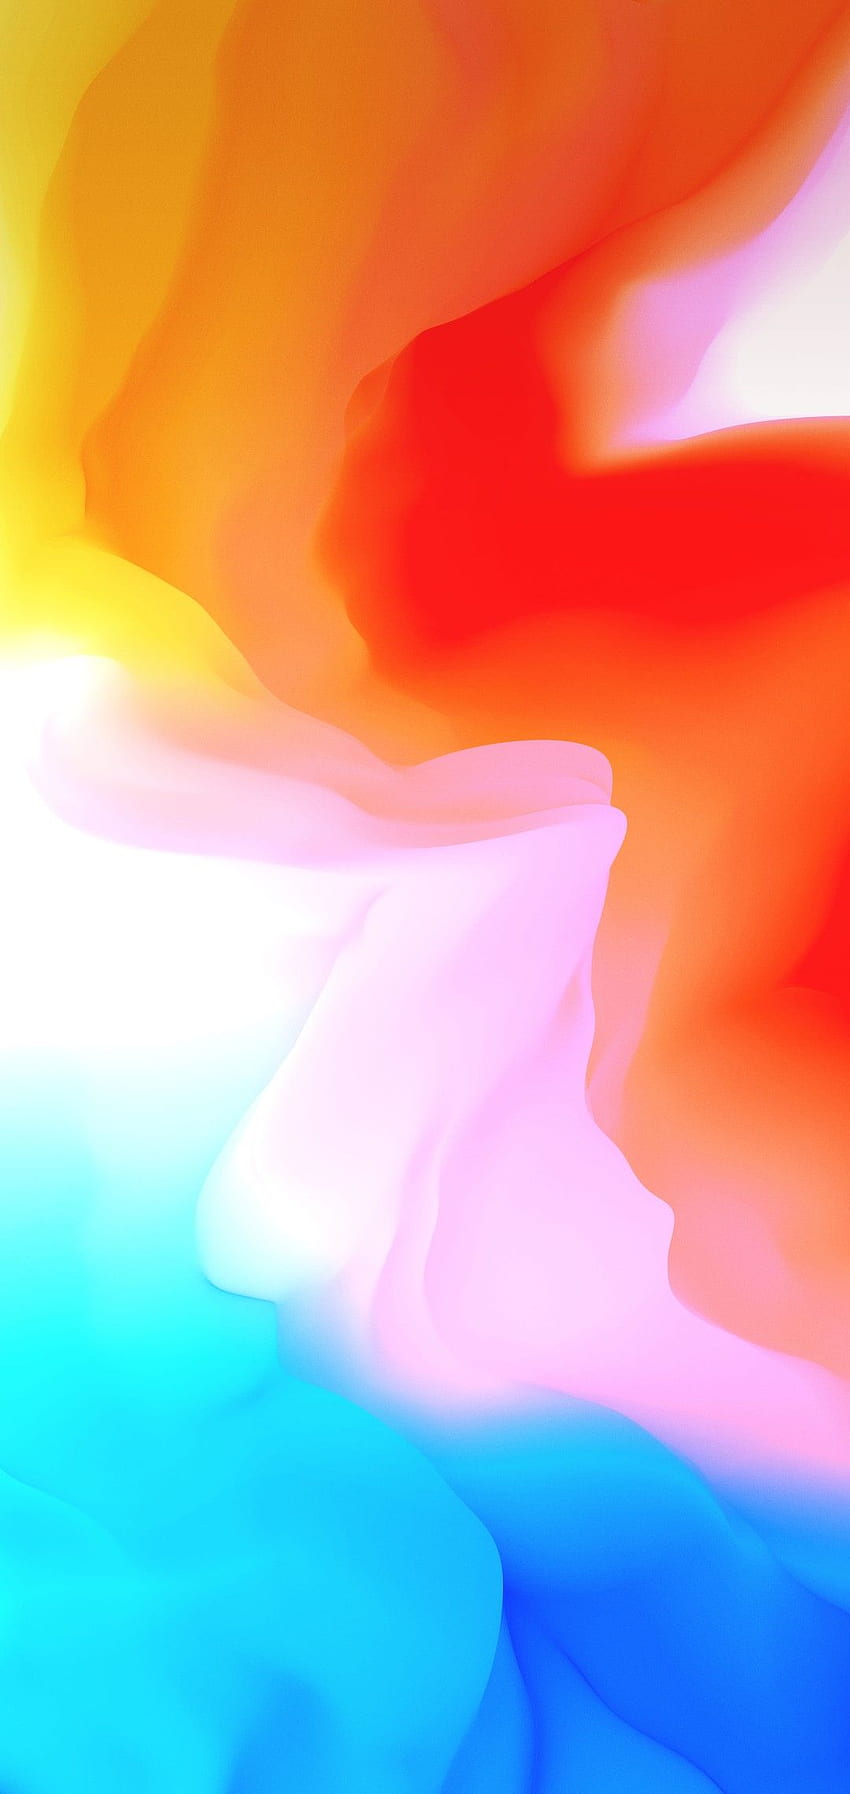 iOS 11, iPhone X, naranja, rojo, rosa, azul, limpio, simple, abstracto fondo de pantalla del teléfono